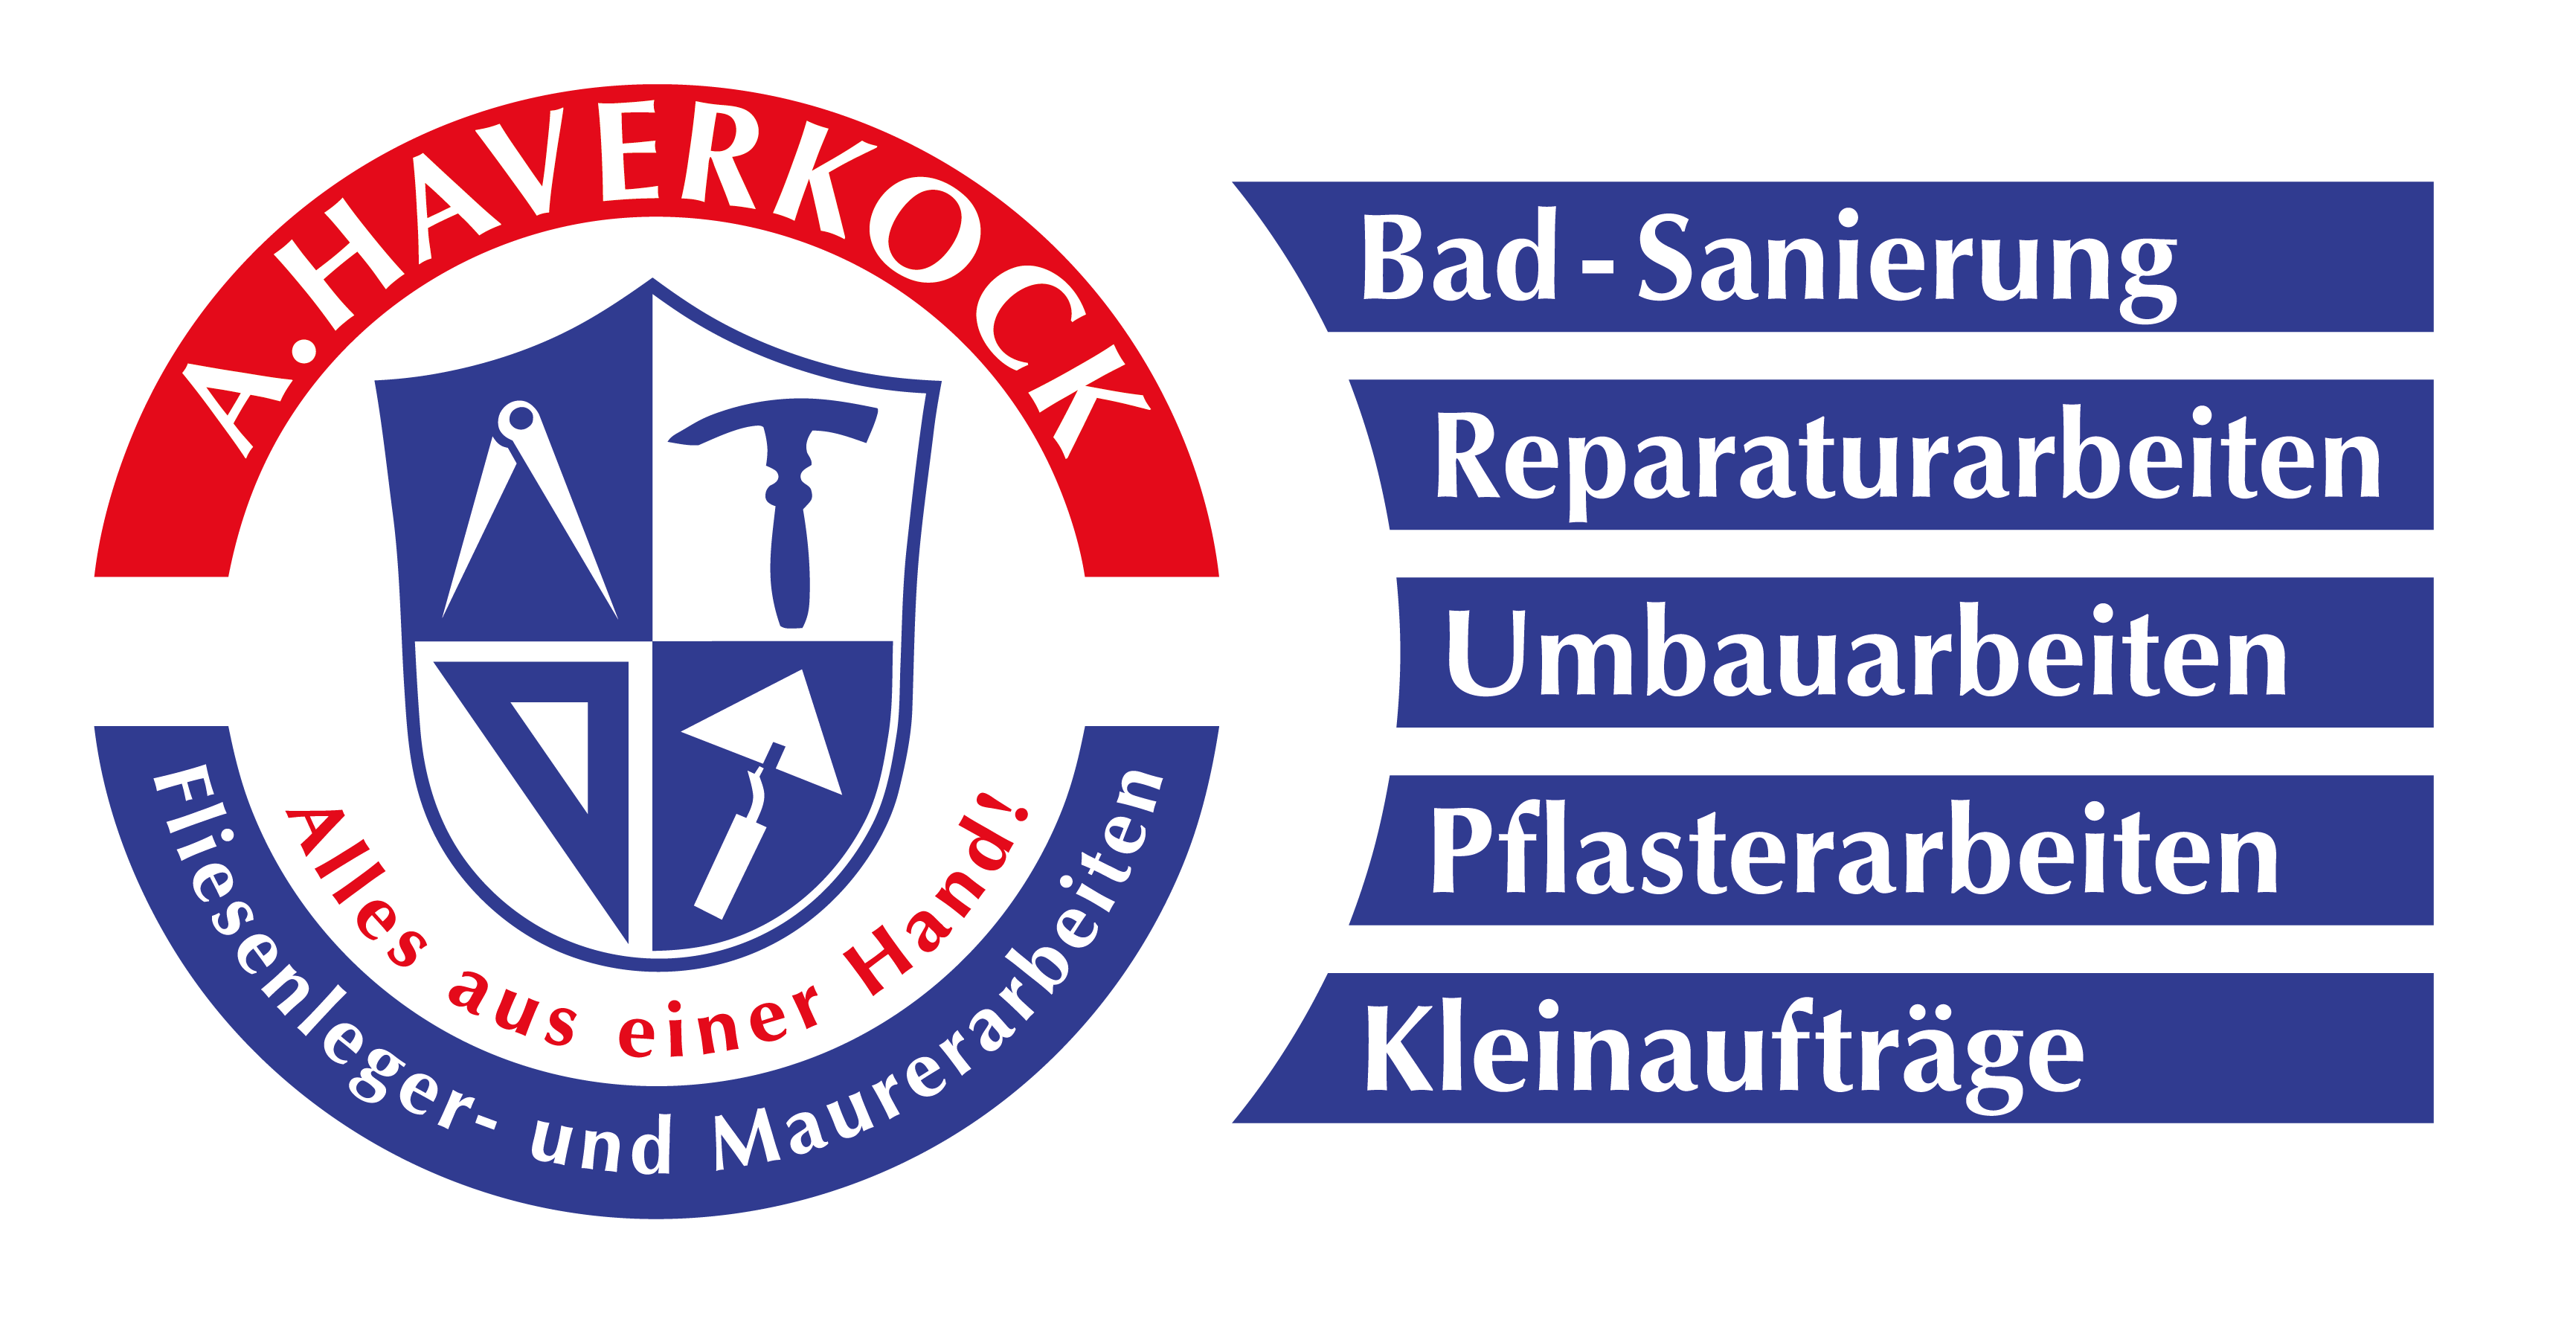 Haverkock – Fliesenleger und Maurerarbeiten